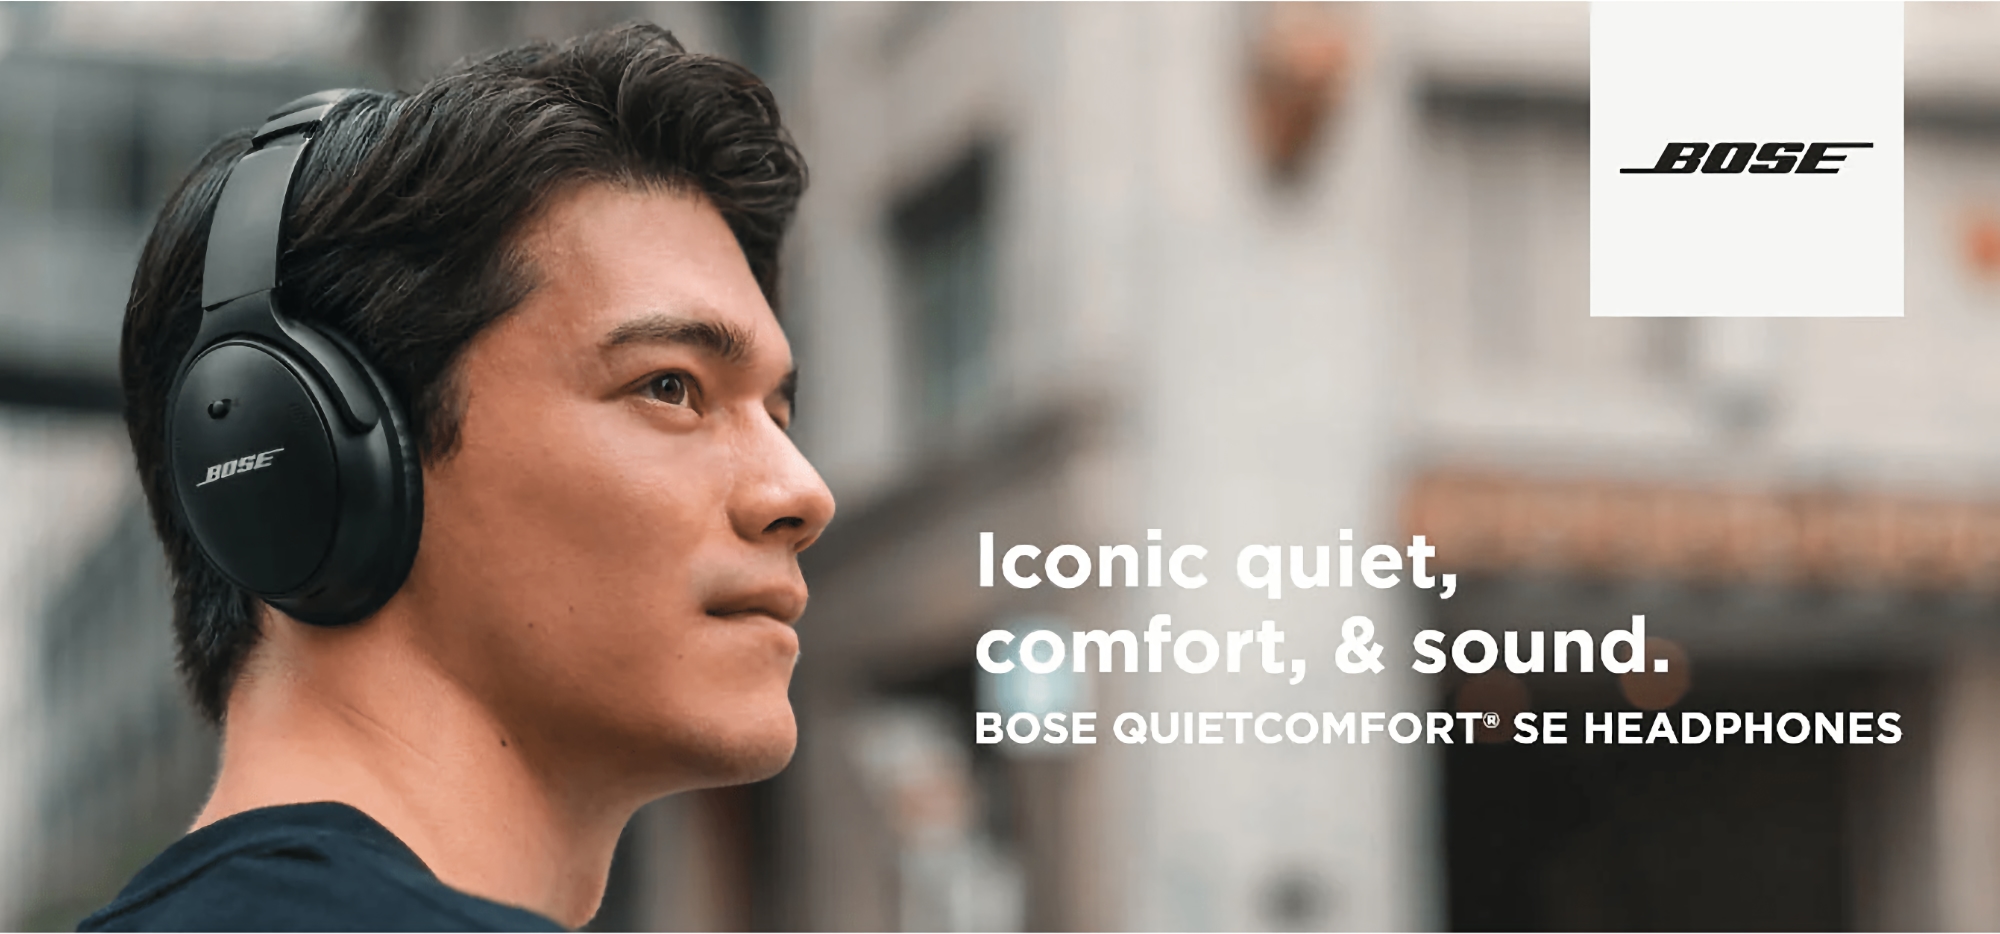 Bose QuietComfort SE auf Amazon: Kopfhörer mit ANC und bis zu 24 Stunden Akkulaufzeit zum Preis von 101 Euro